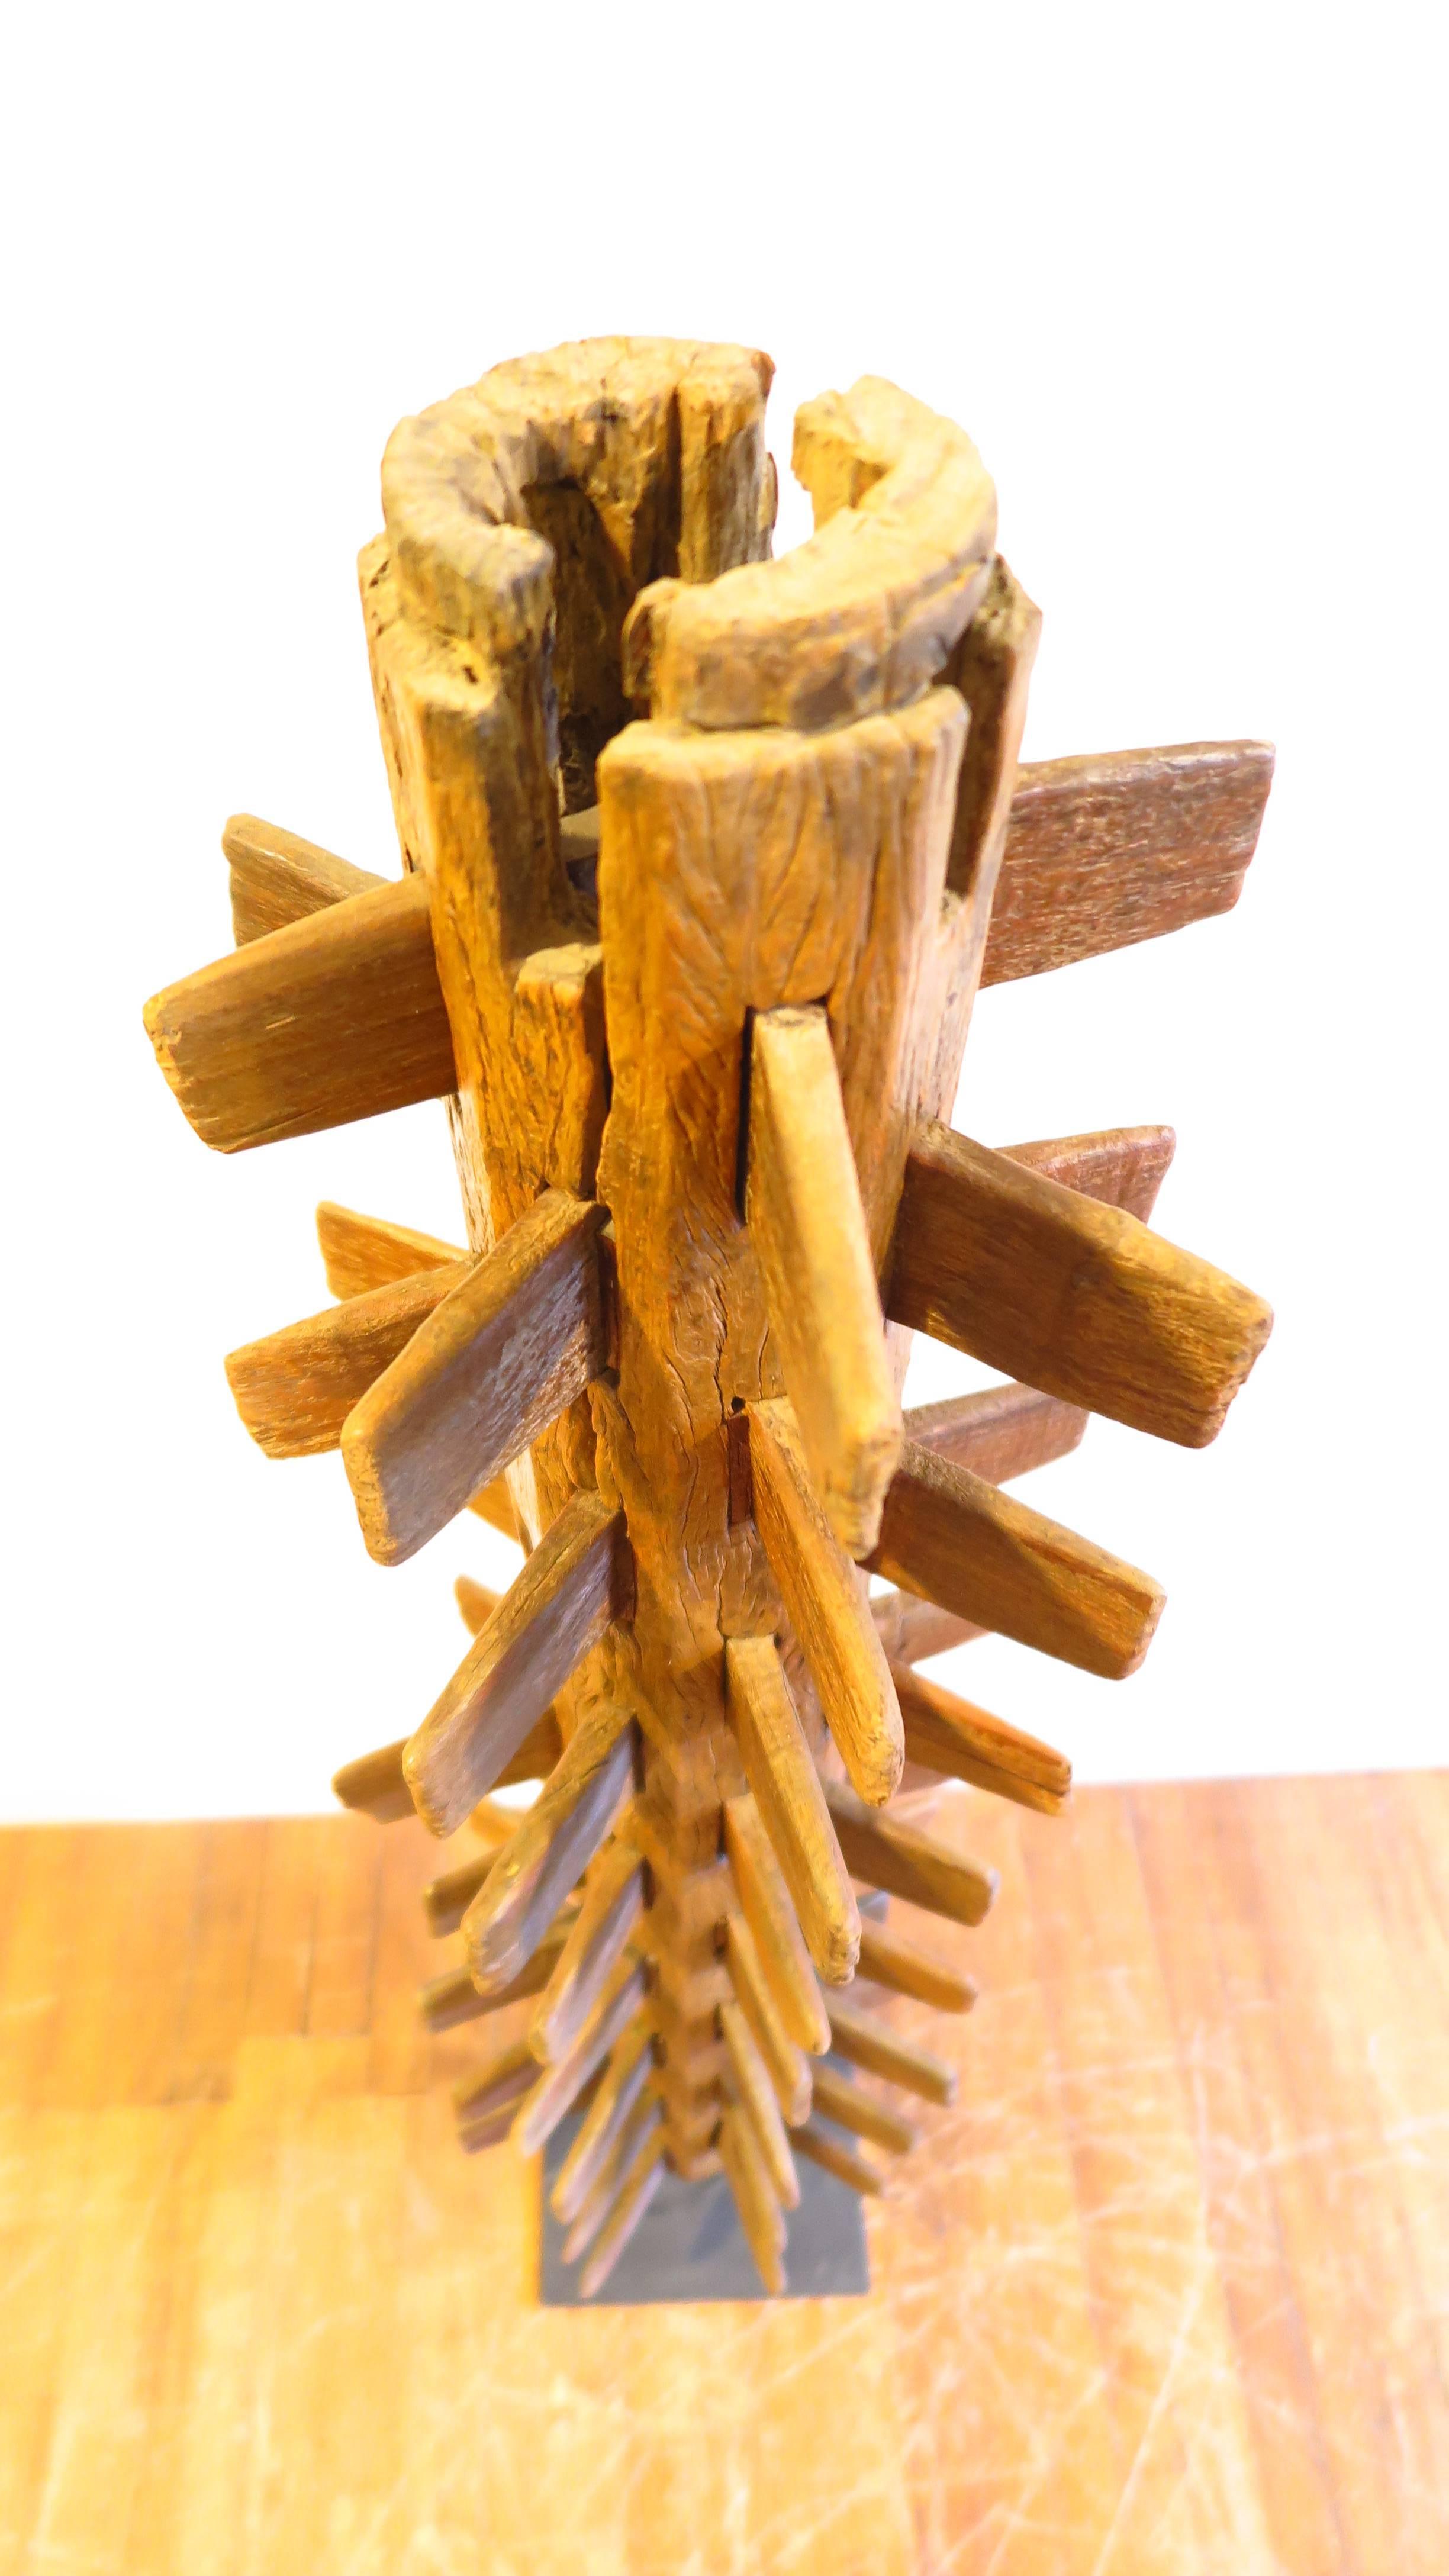 Hardwood Wooden Sculpture